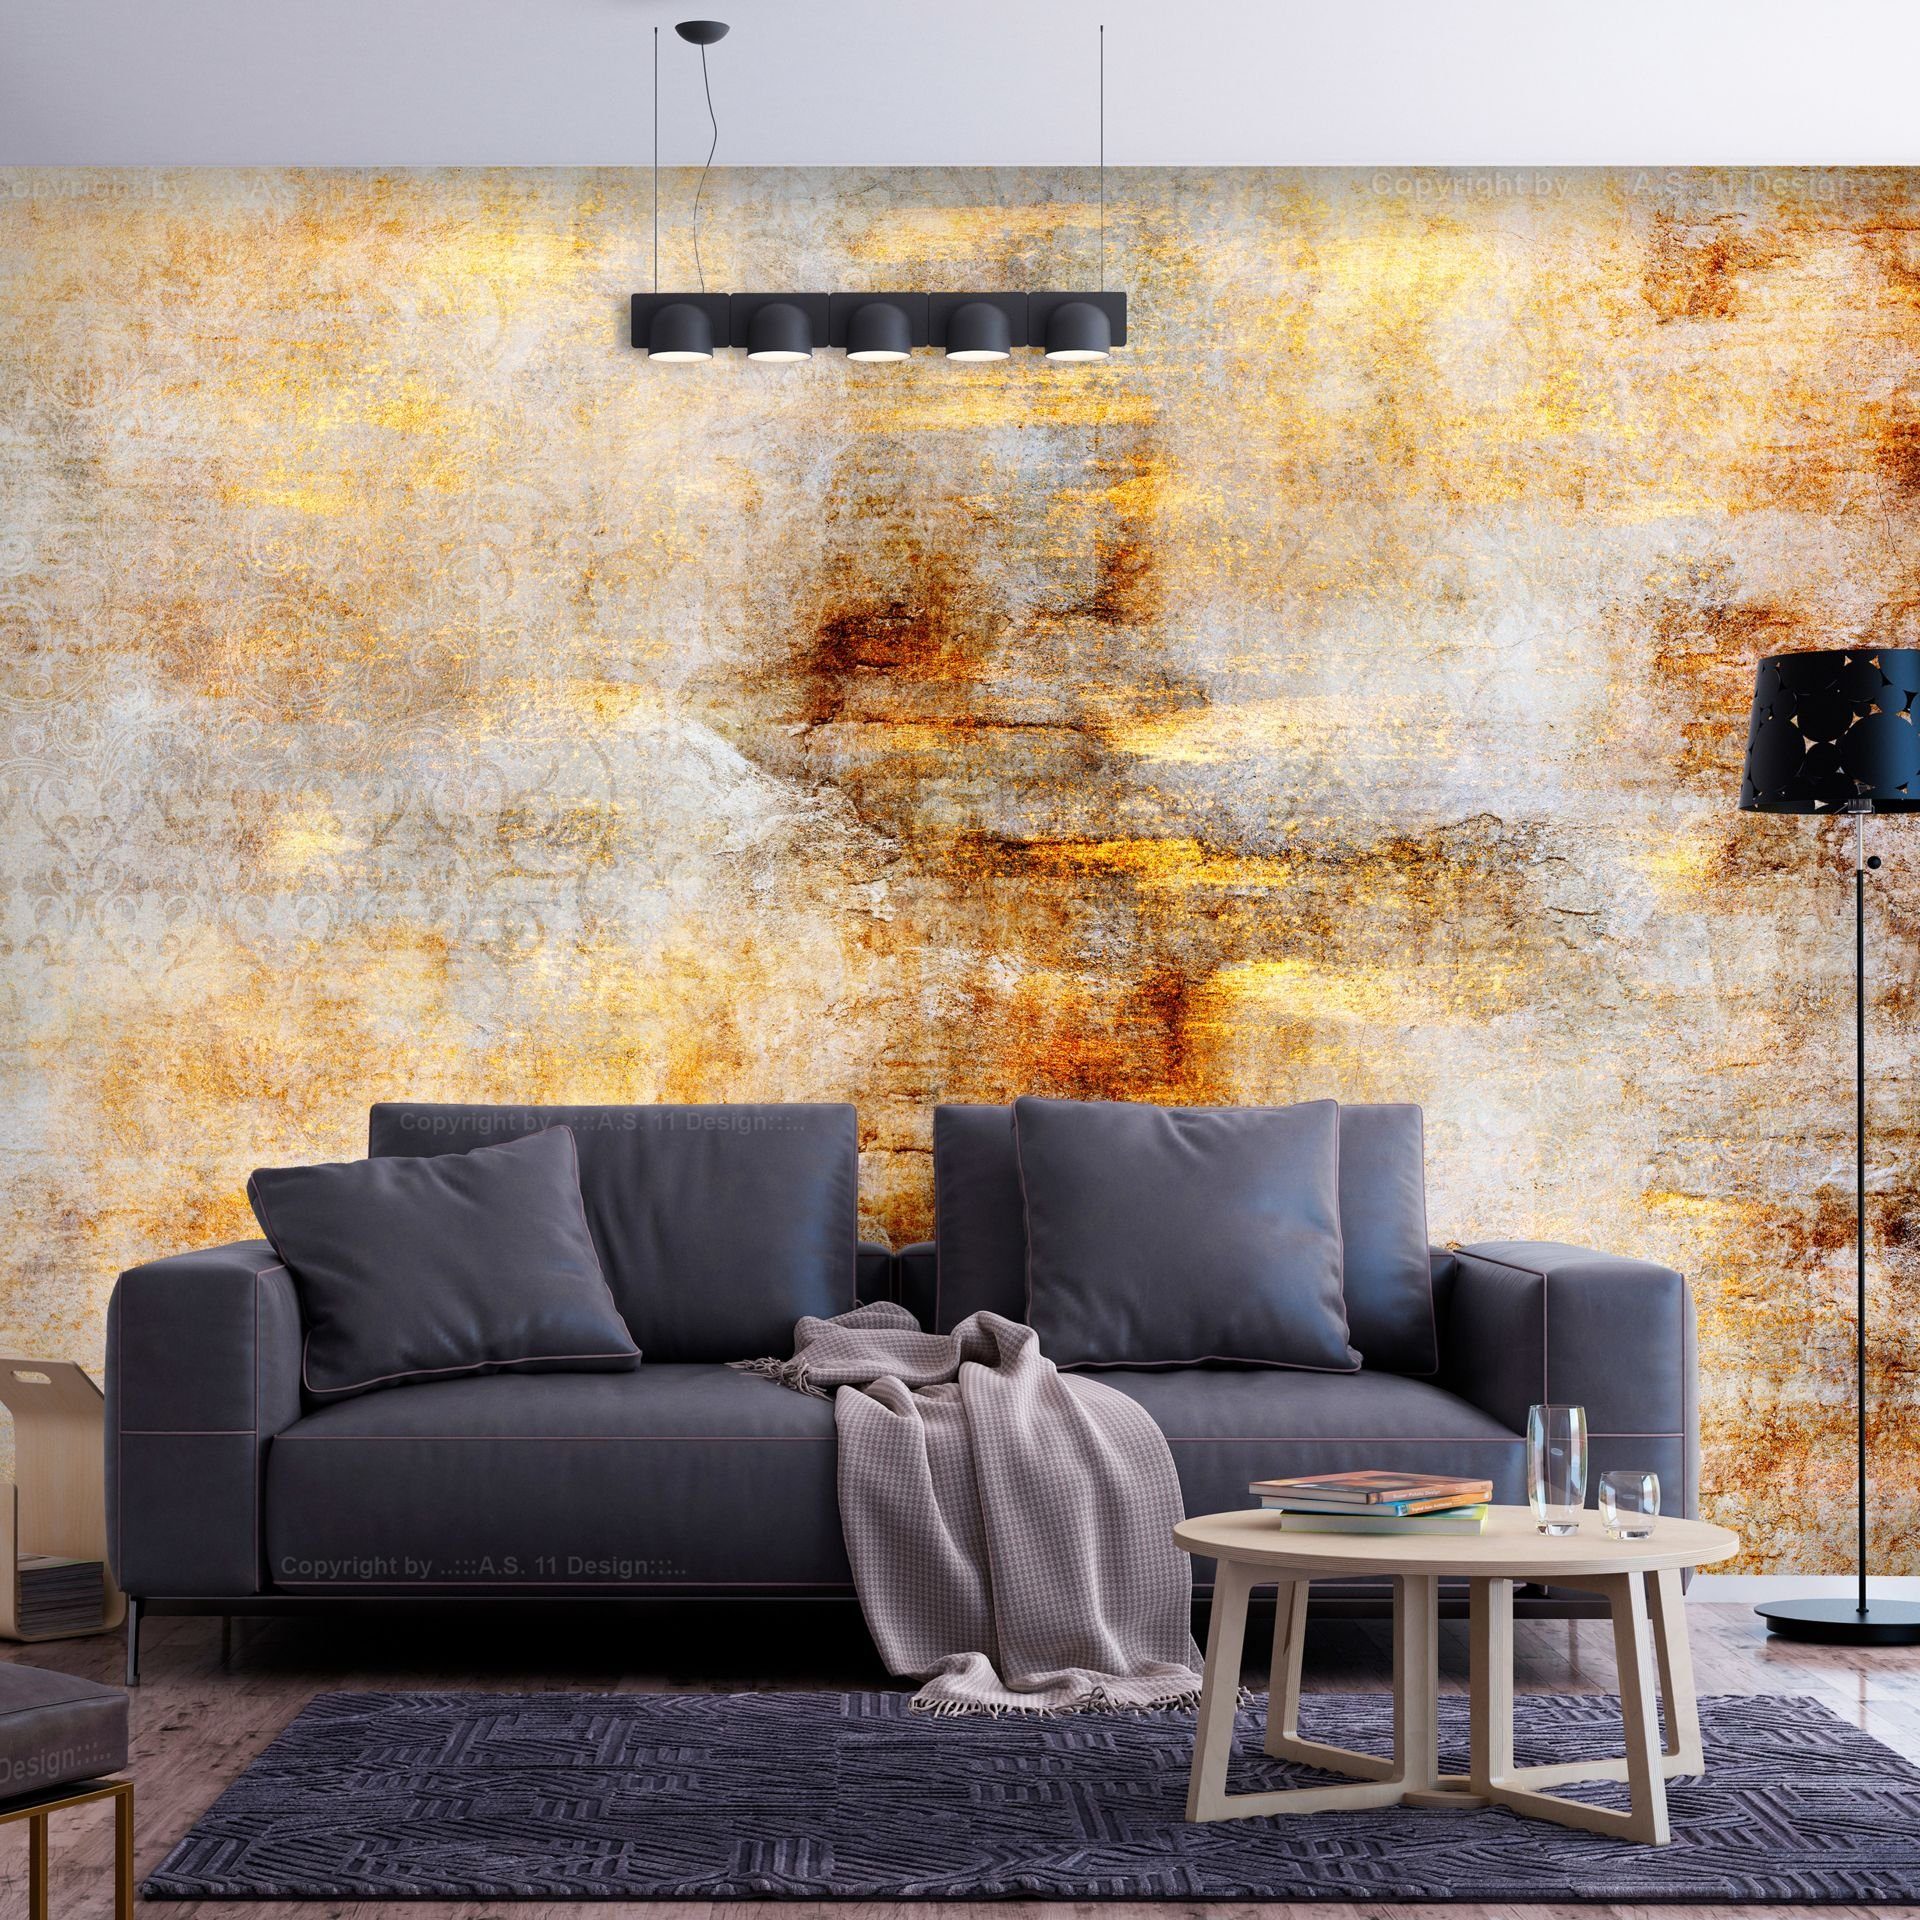 KUNSTLOFT Vliestapete Golden Expression 0.98x0.7 m, Tapete matt, Design lichtbeständige